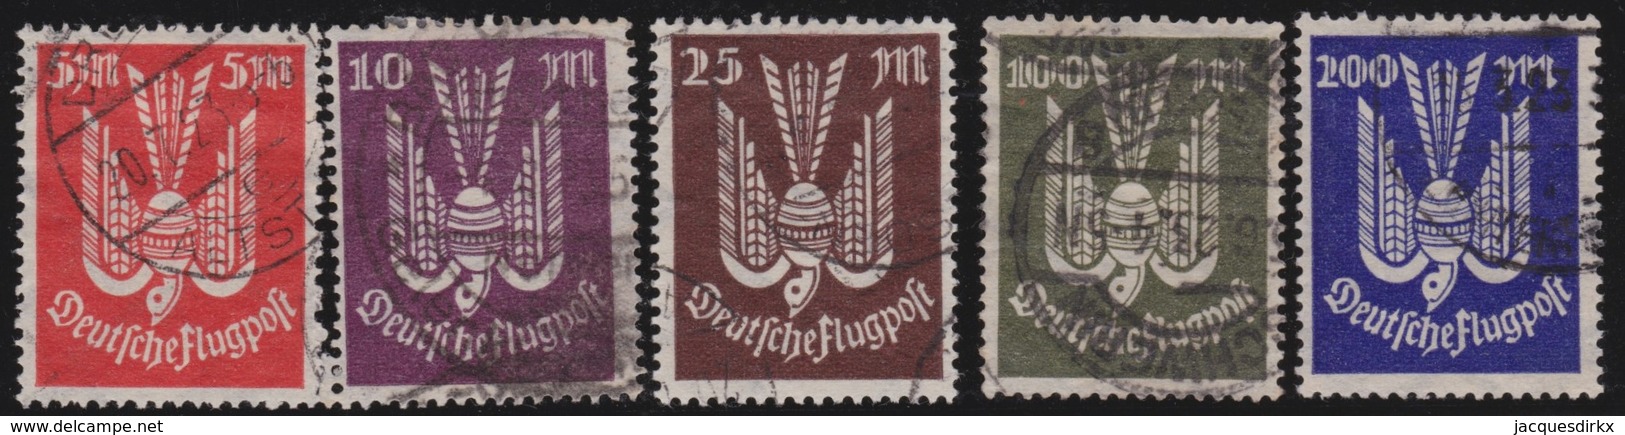 Deutsches  Reich   .    Michel   .   263/267          .     O     .     Gebraucht   .   /     .    Cancelled - Gebraucht